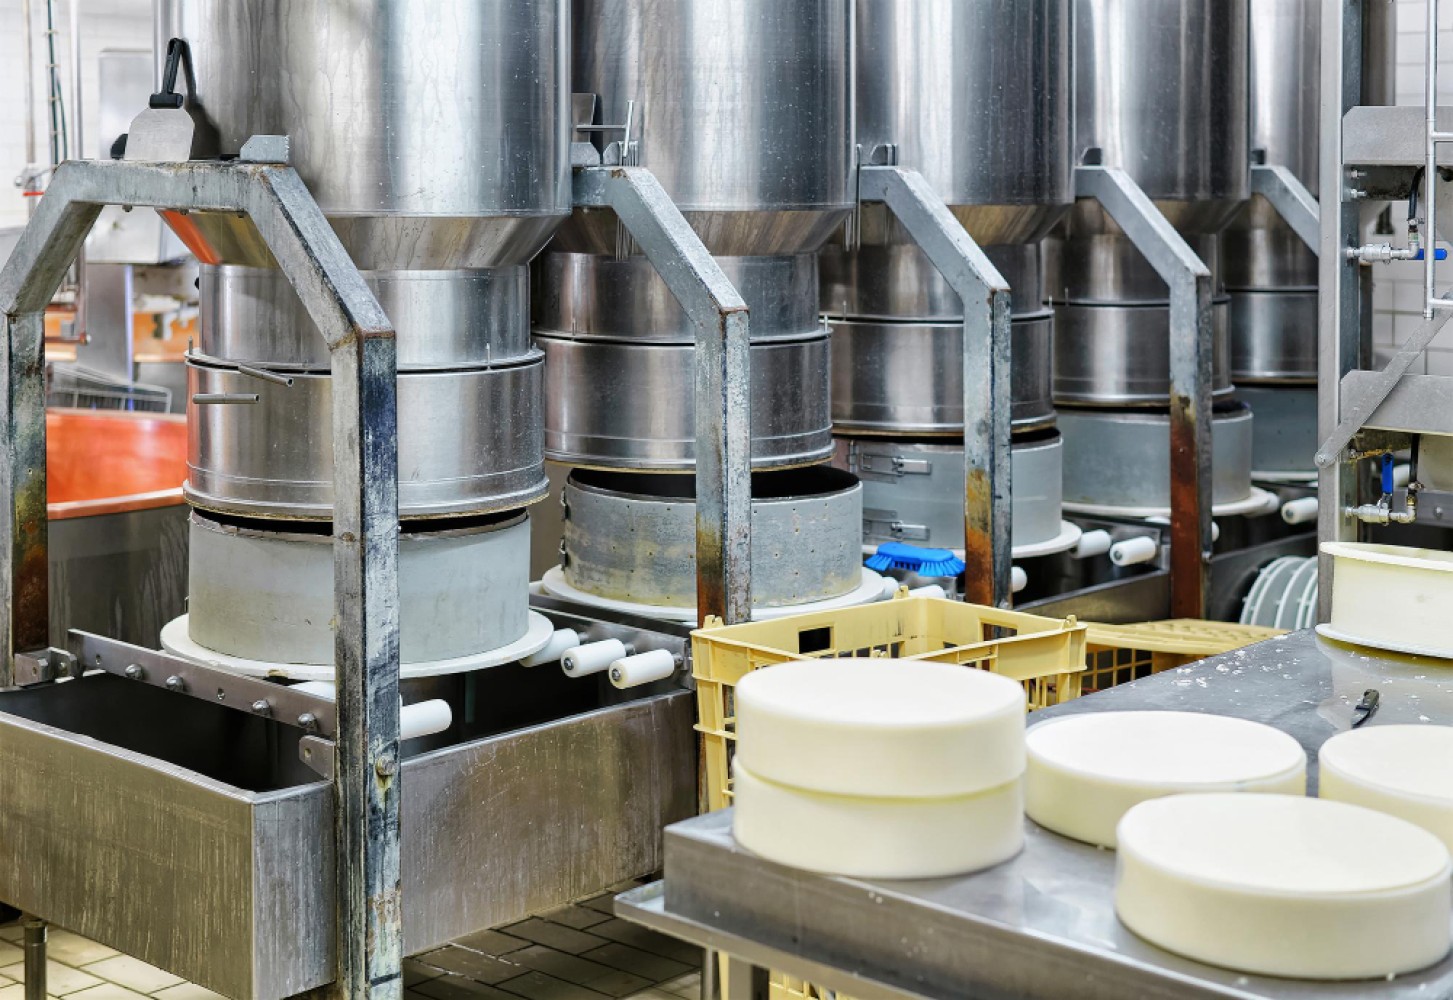 Статья представляет собой введение в дисциплину "Химия и физика молока" с акцентом на технику безопасности и действующие стандарты. Она охватывает основные аспекты химического и физического состава молока, а также подчеркивает важность соблюдения норм безопасности и качества в молочной промышленности.